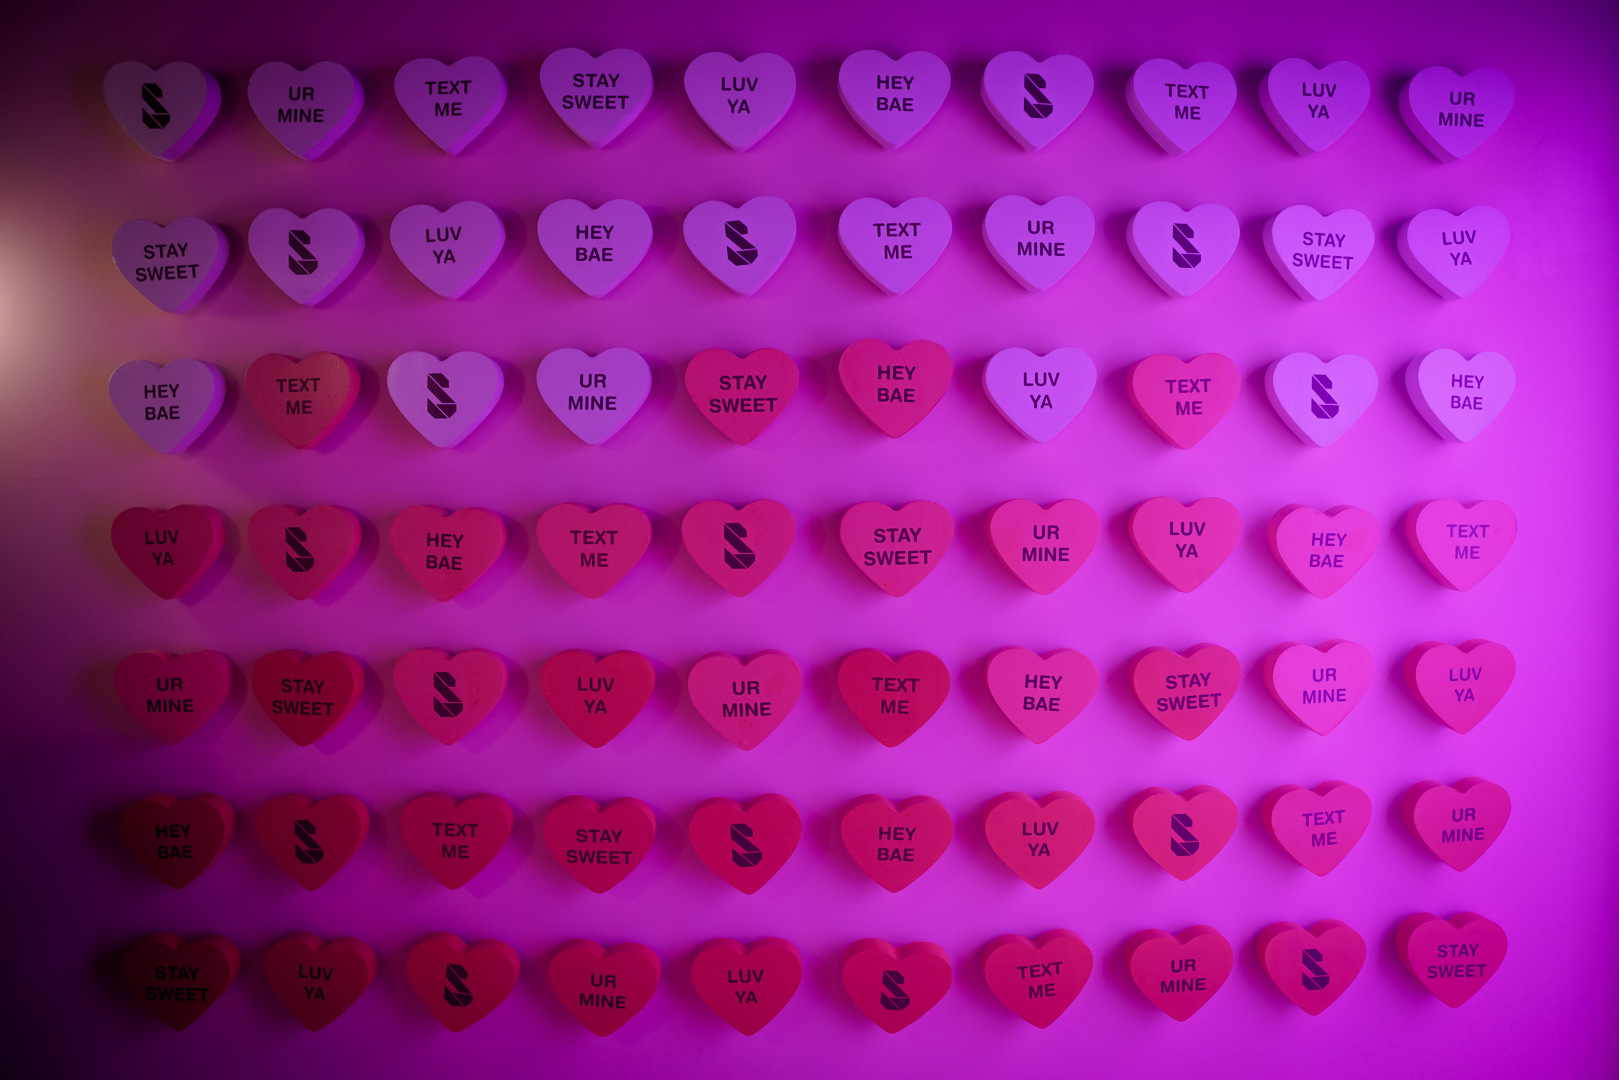 An art installation of valentine's heart candies